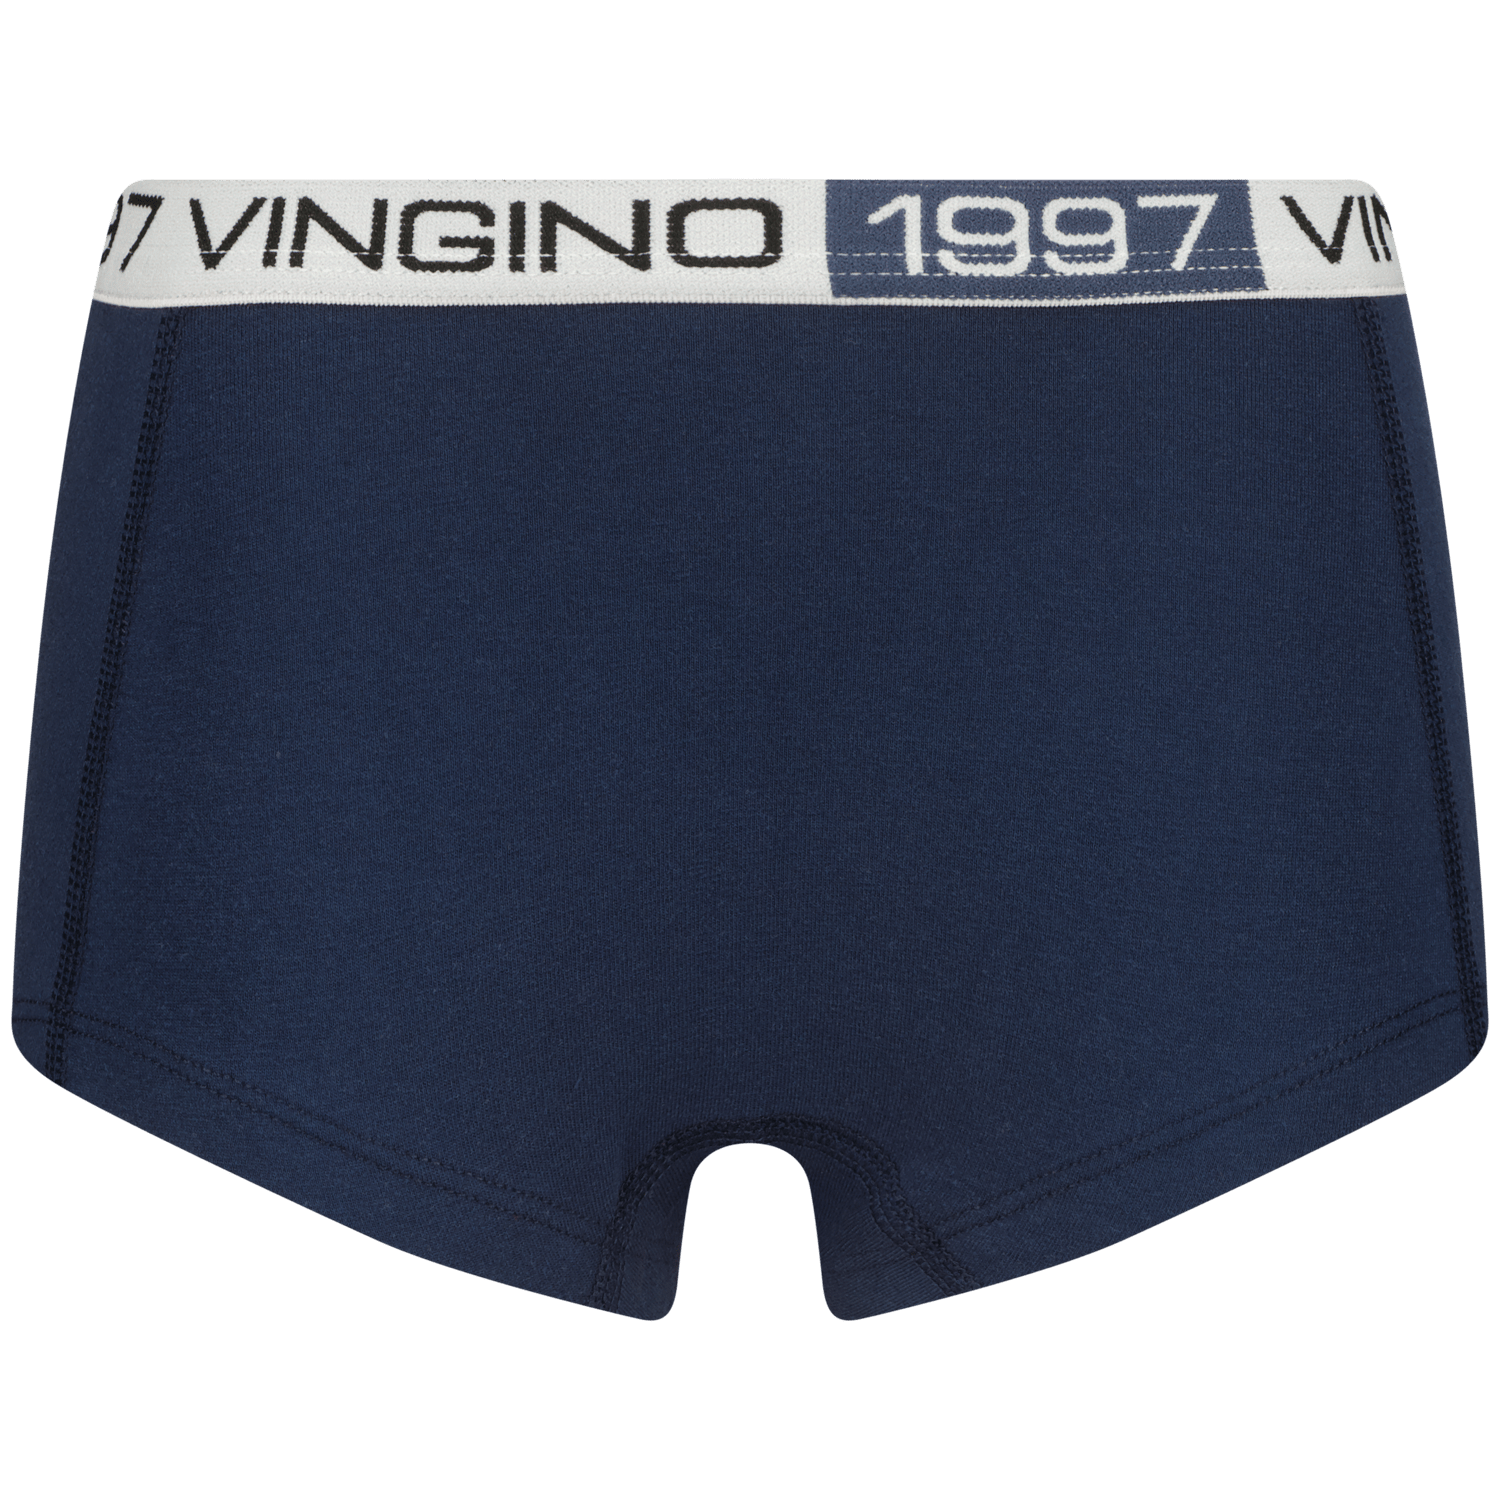 VINGINO Hipster G-so24-6 stripe 3 pack